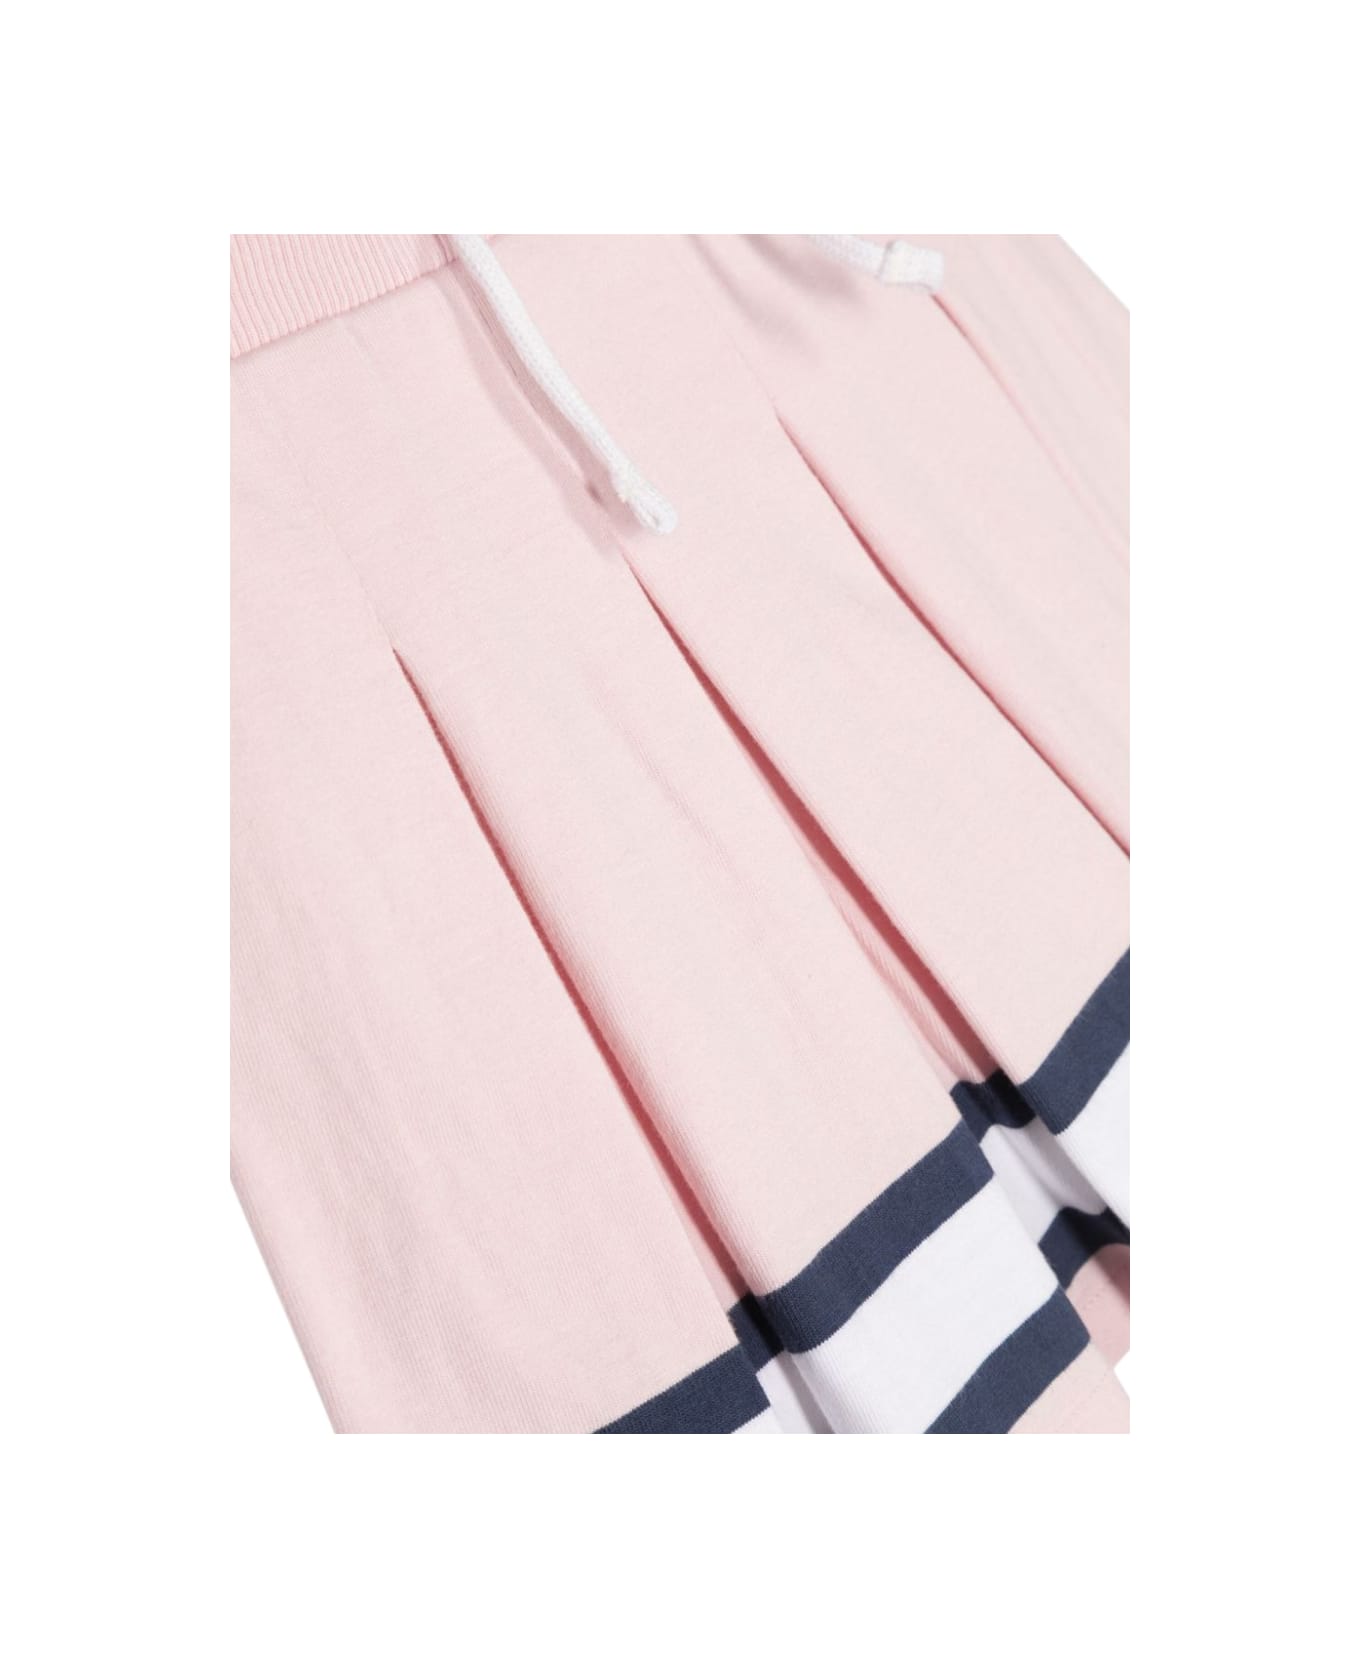 Polo Ralph Lauren Pleatskirt-skirtx2;full - PINK ボトムス